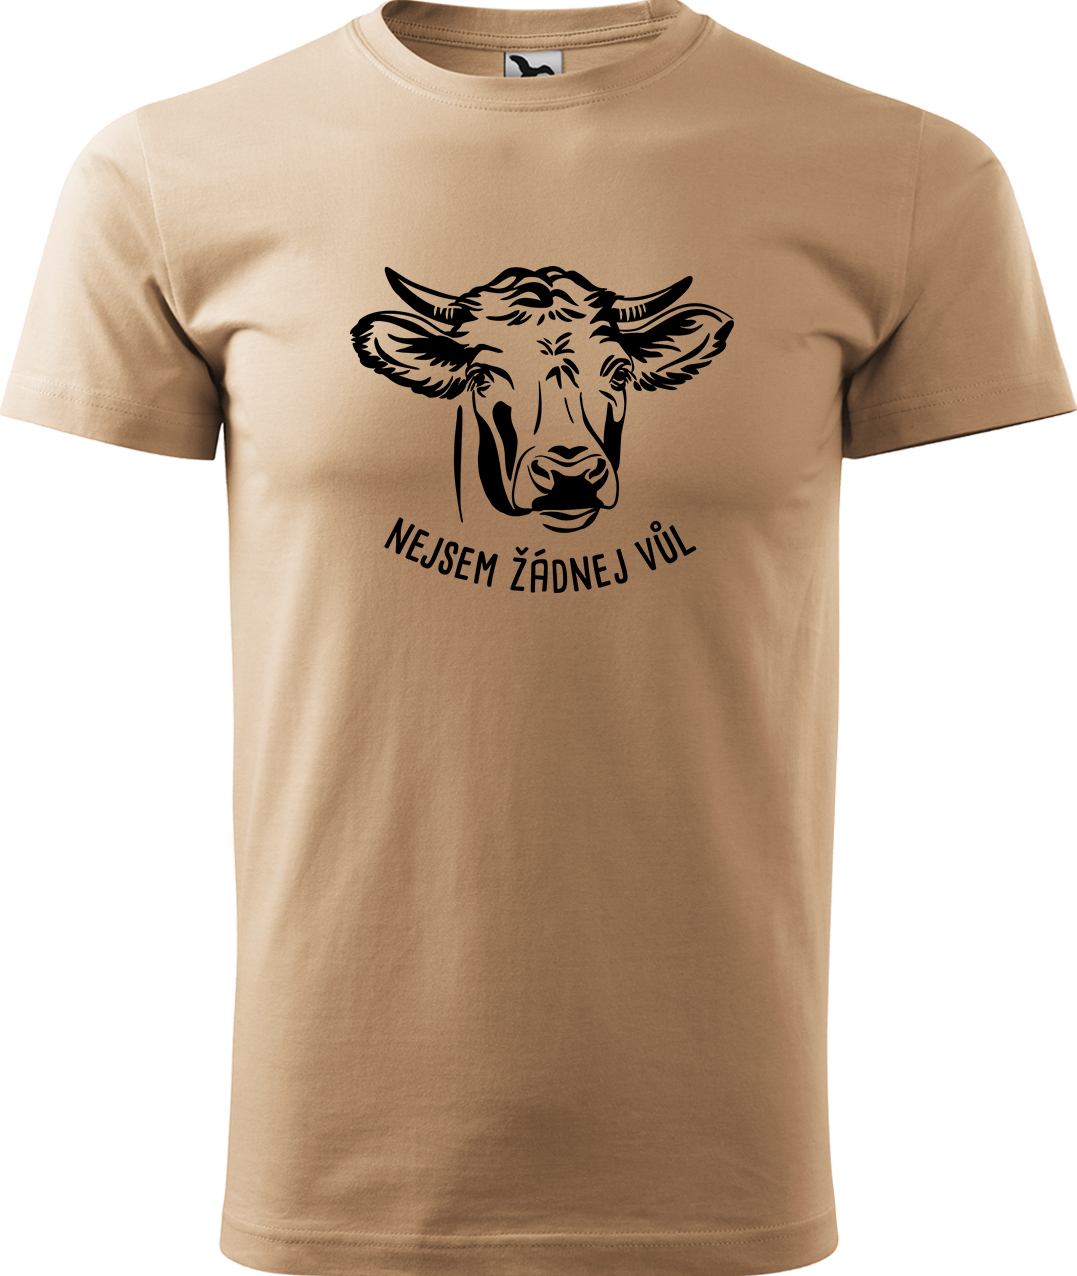 Pánské tričko s krávou - Nejsem žádnej vůl Velikost: M, Barva: Písková (08), Střih: pánský